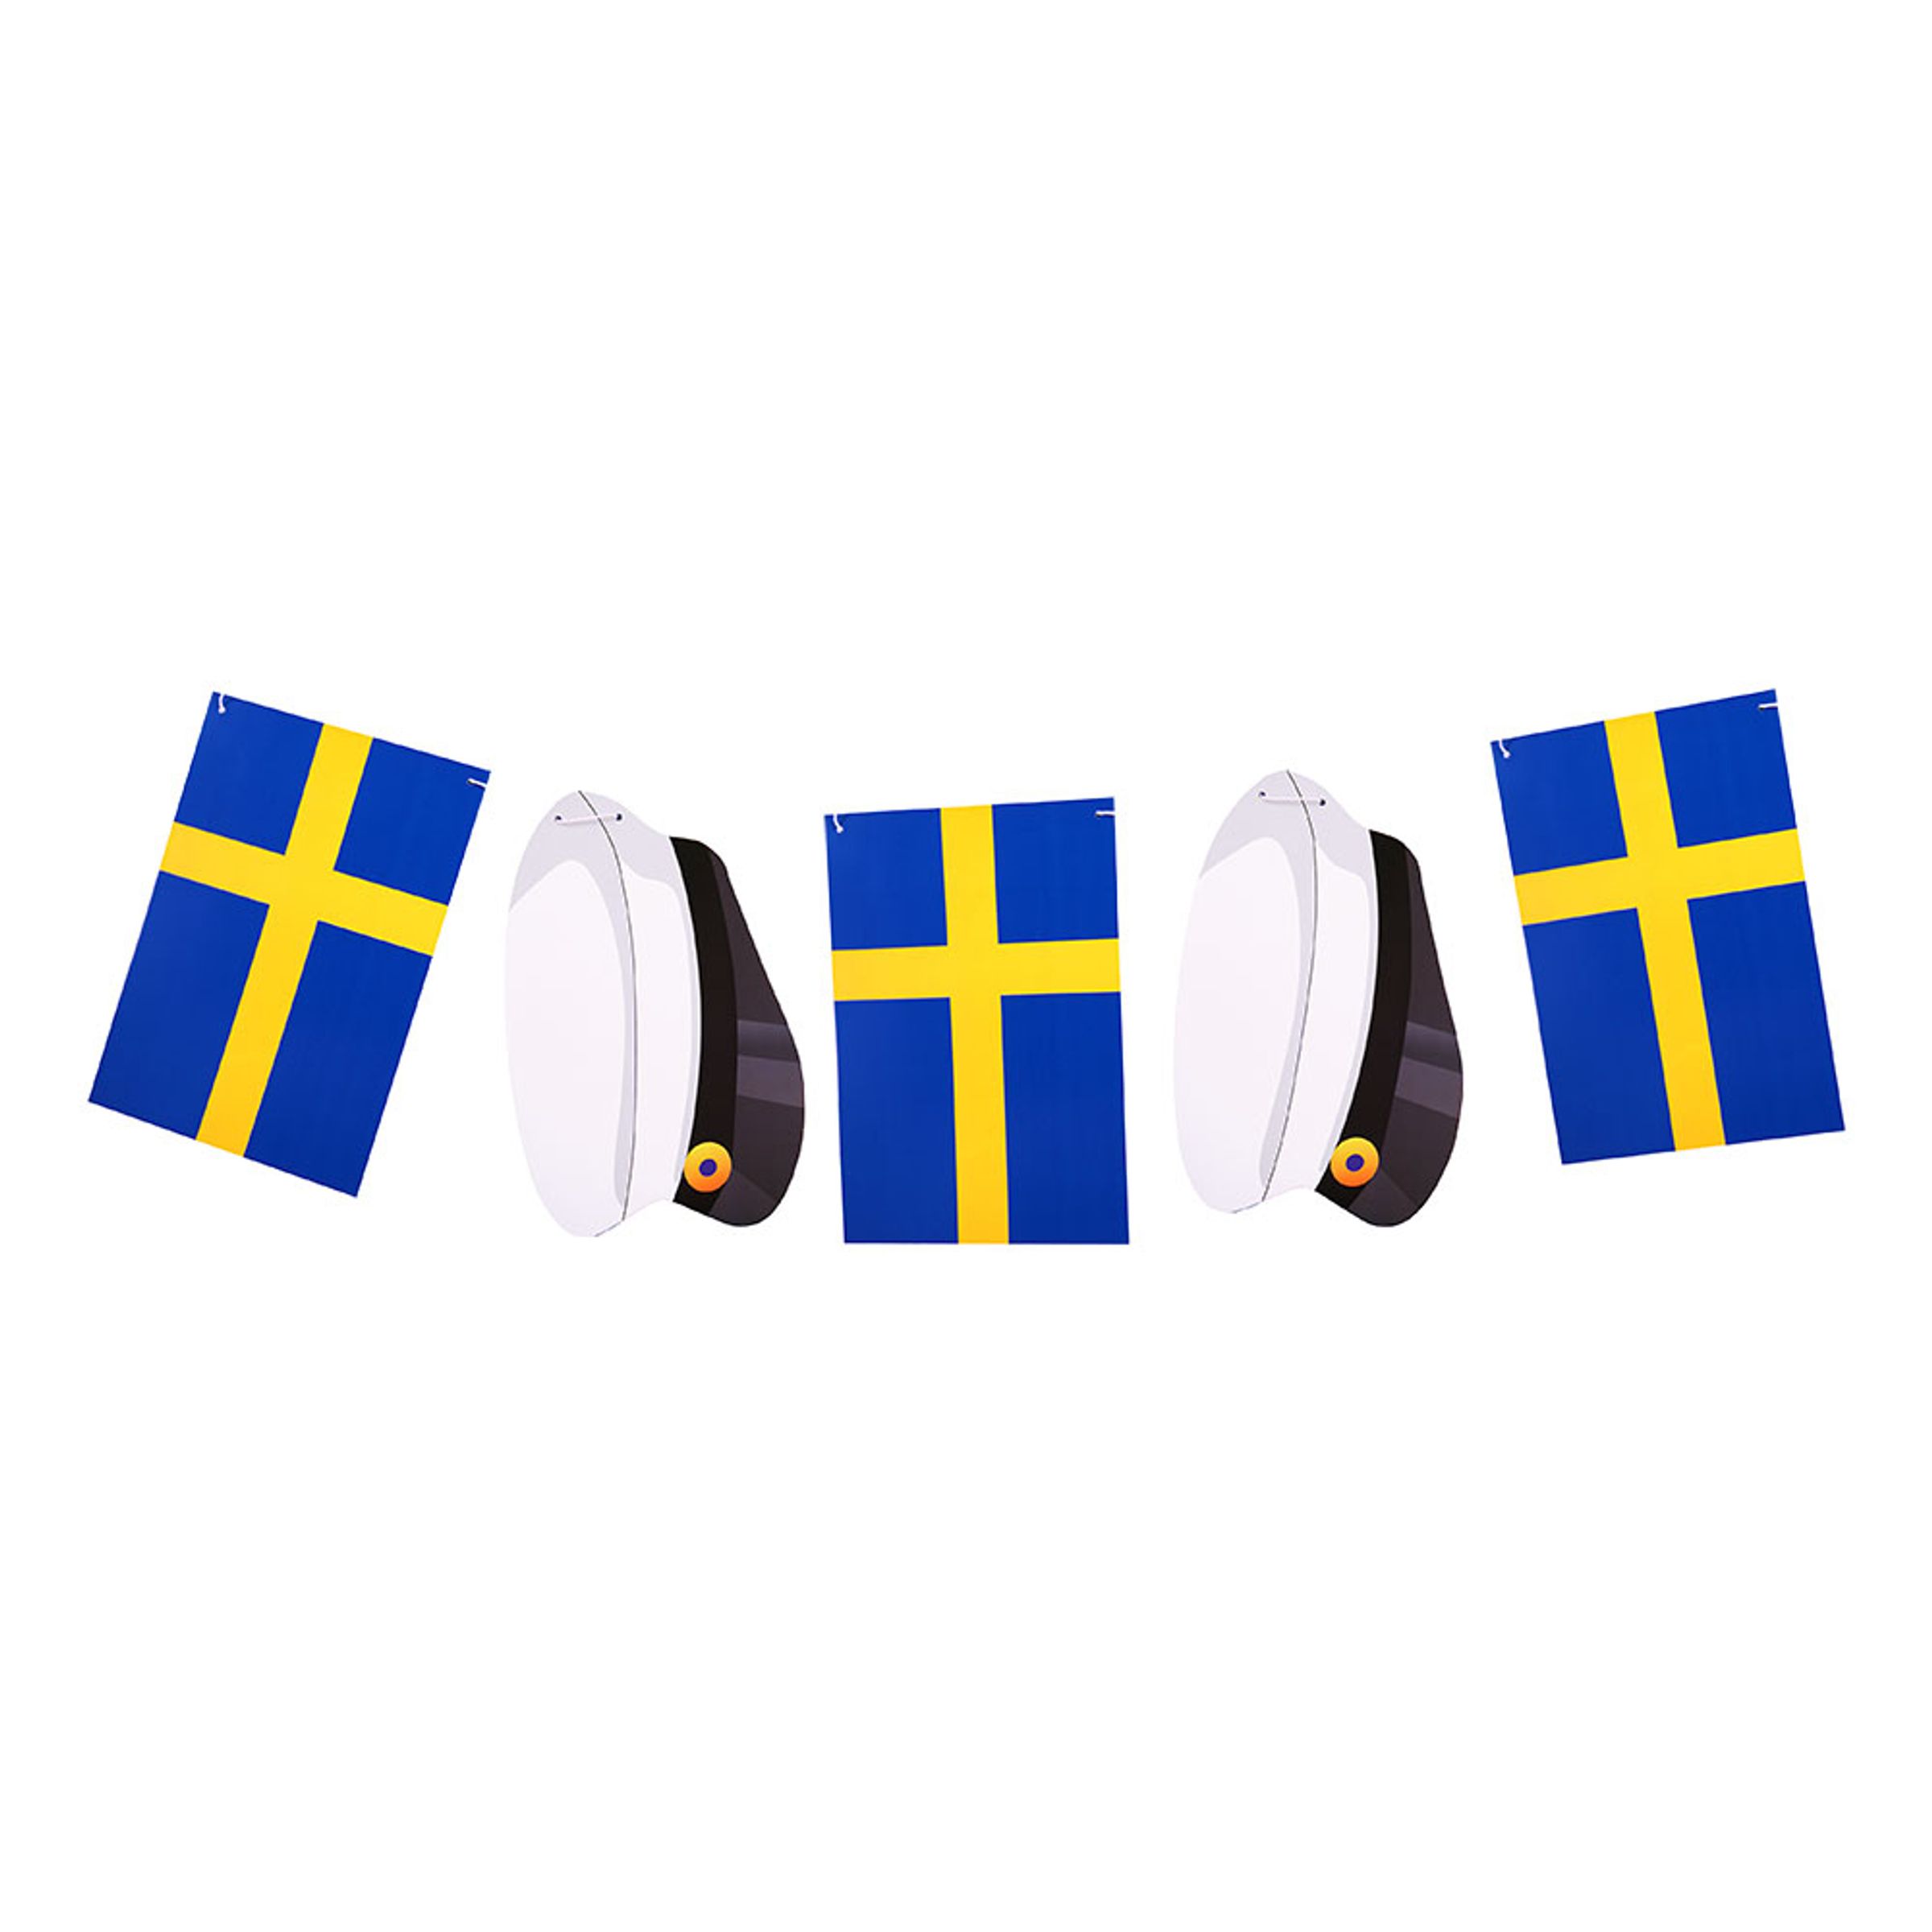 Läs mer om Girlang Sverigeflaggor och Studentmössor